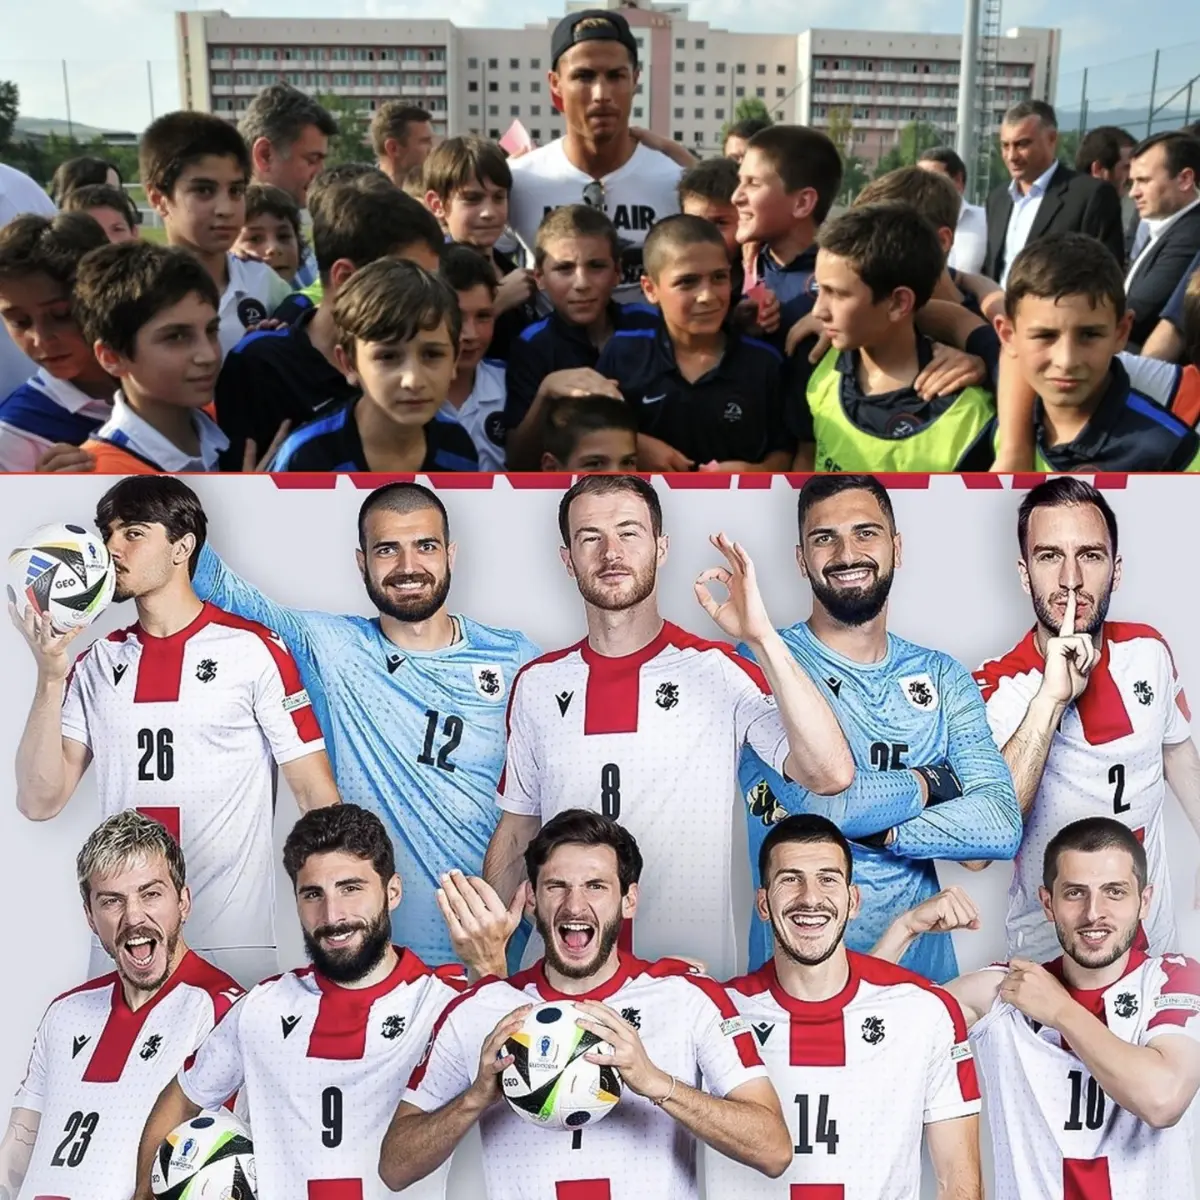 Có đến 10 cái tên trưởng thành từ Ronaldo cùng nhiều tên tuổi nổi tiếng xuất hiện trong buổi lễ ra mắt Học viện bóng đá Dinamo Tbilisi góp mặt trong trận thắng Bồ Đào Nha.